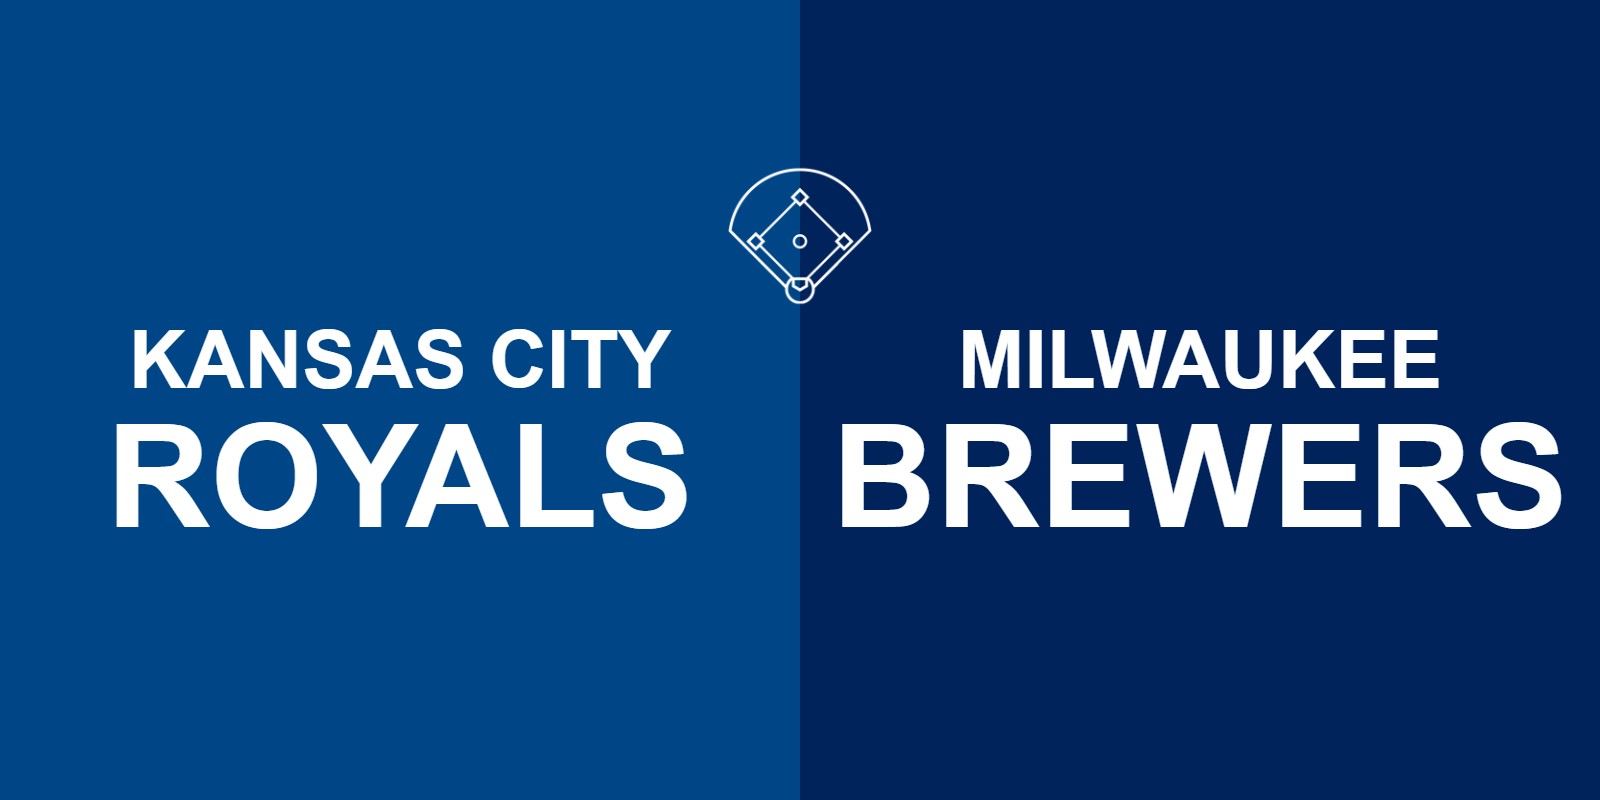 Royals vs Brewers